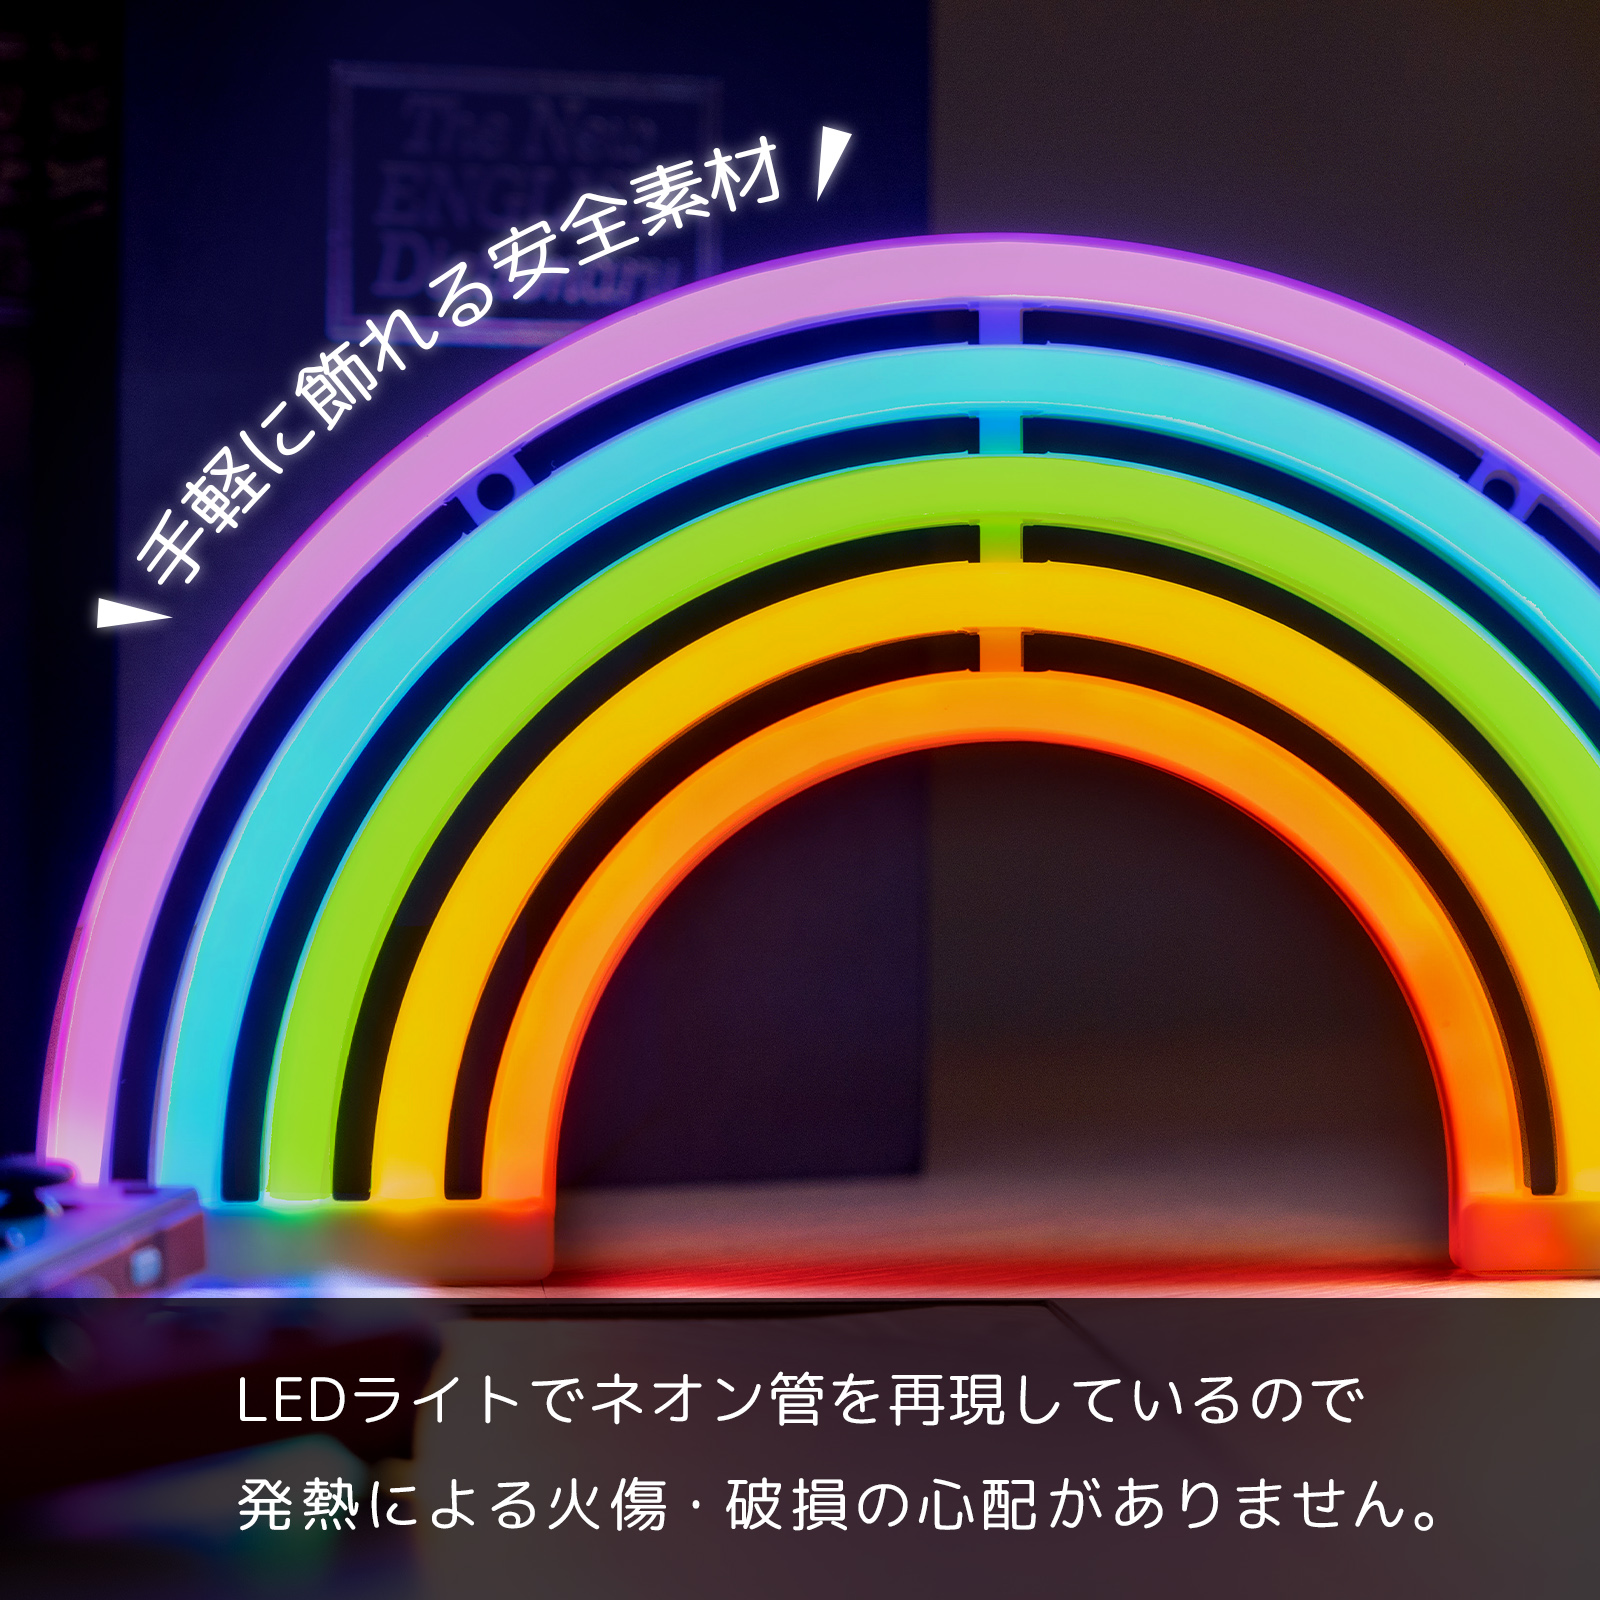 RAINBOW LED 虹 レインボー ネオン ライト ネオンサイン ネオン